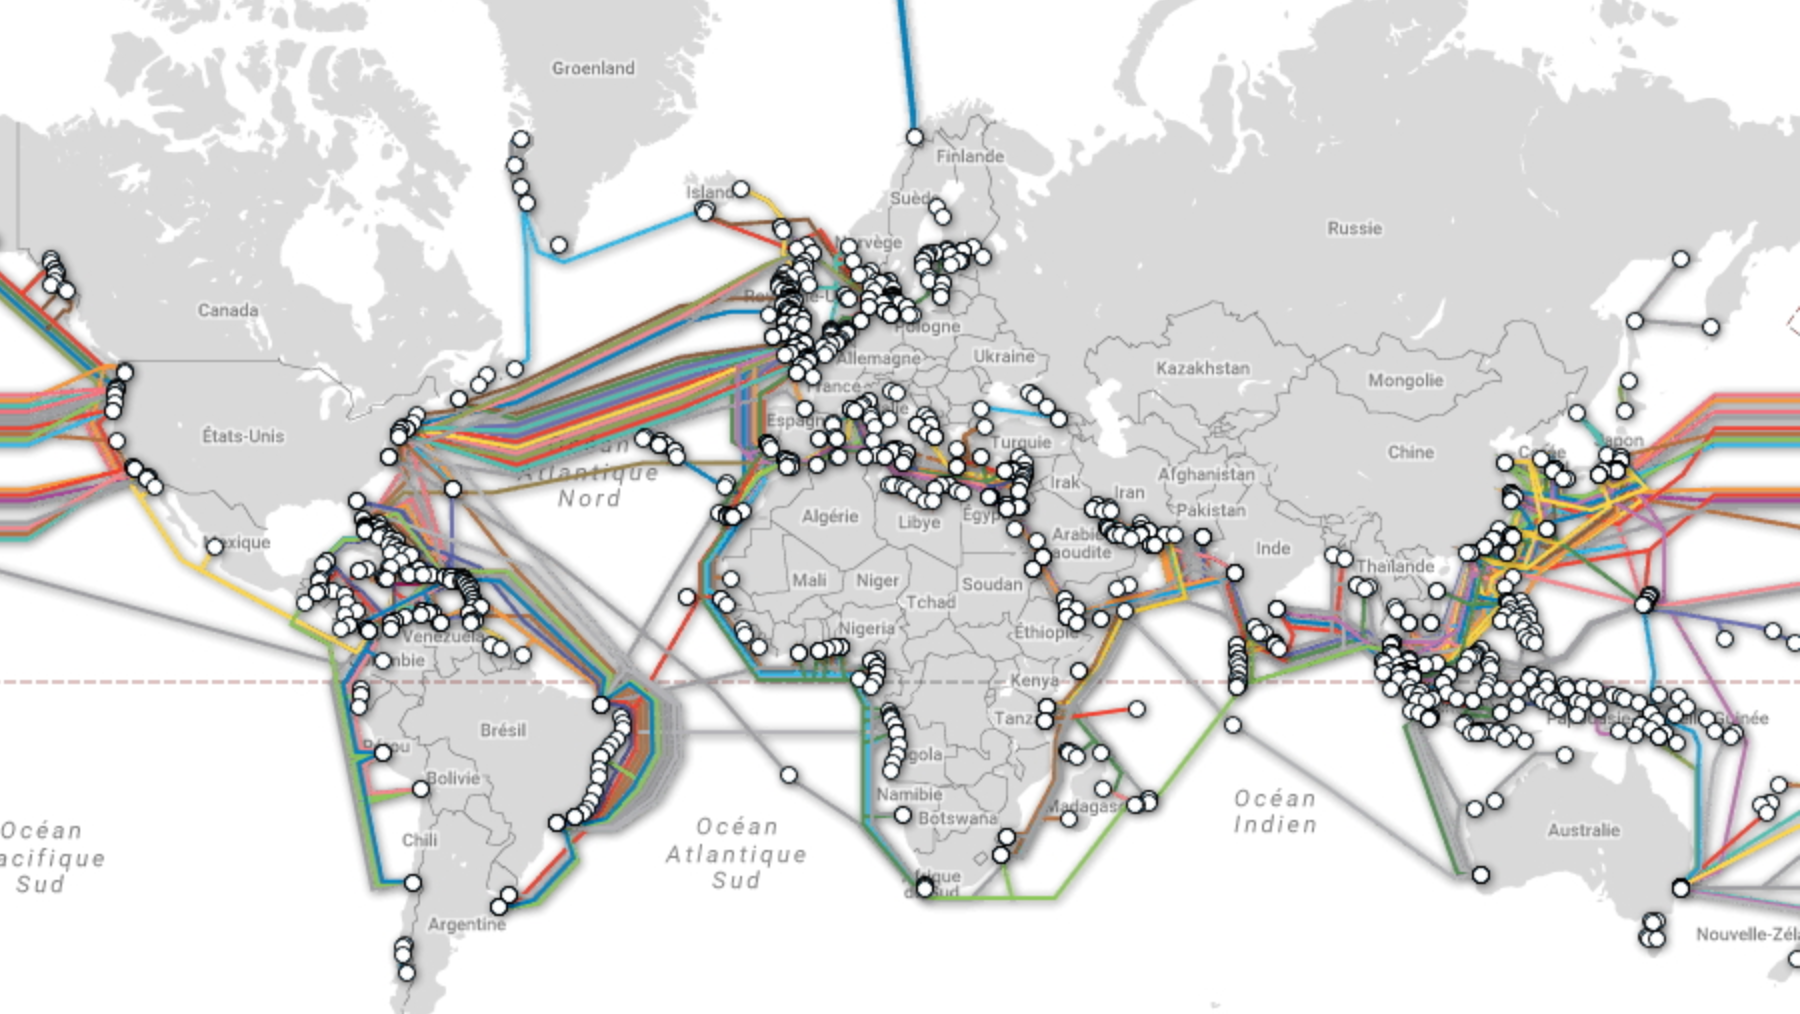 Câbles sous-marins de télécommunications et intérêts de puissance : les enjeux de sécurité des flux internationaux de données